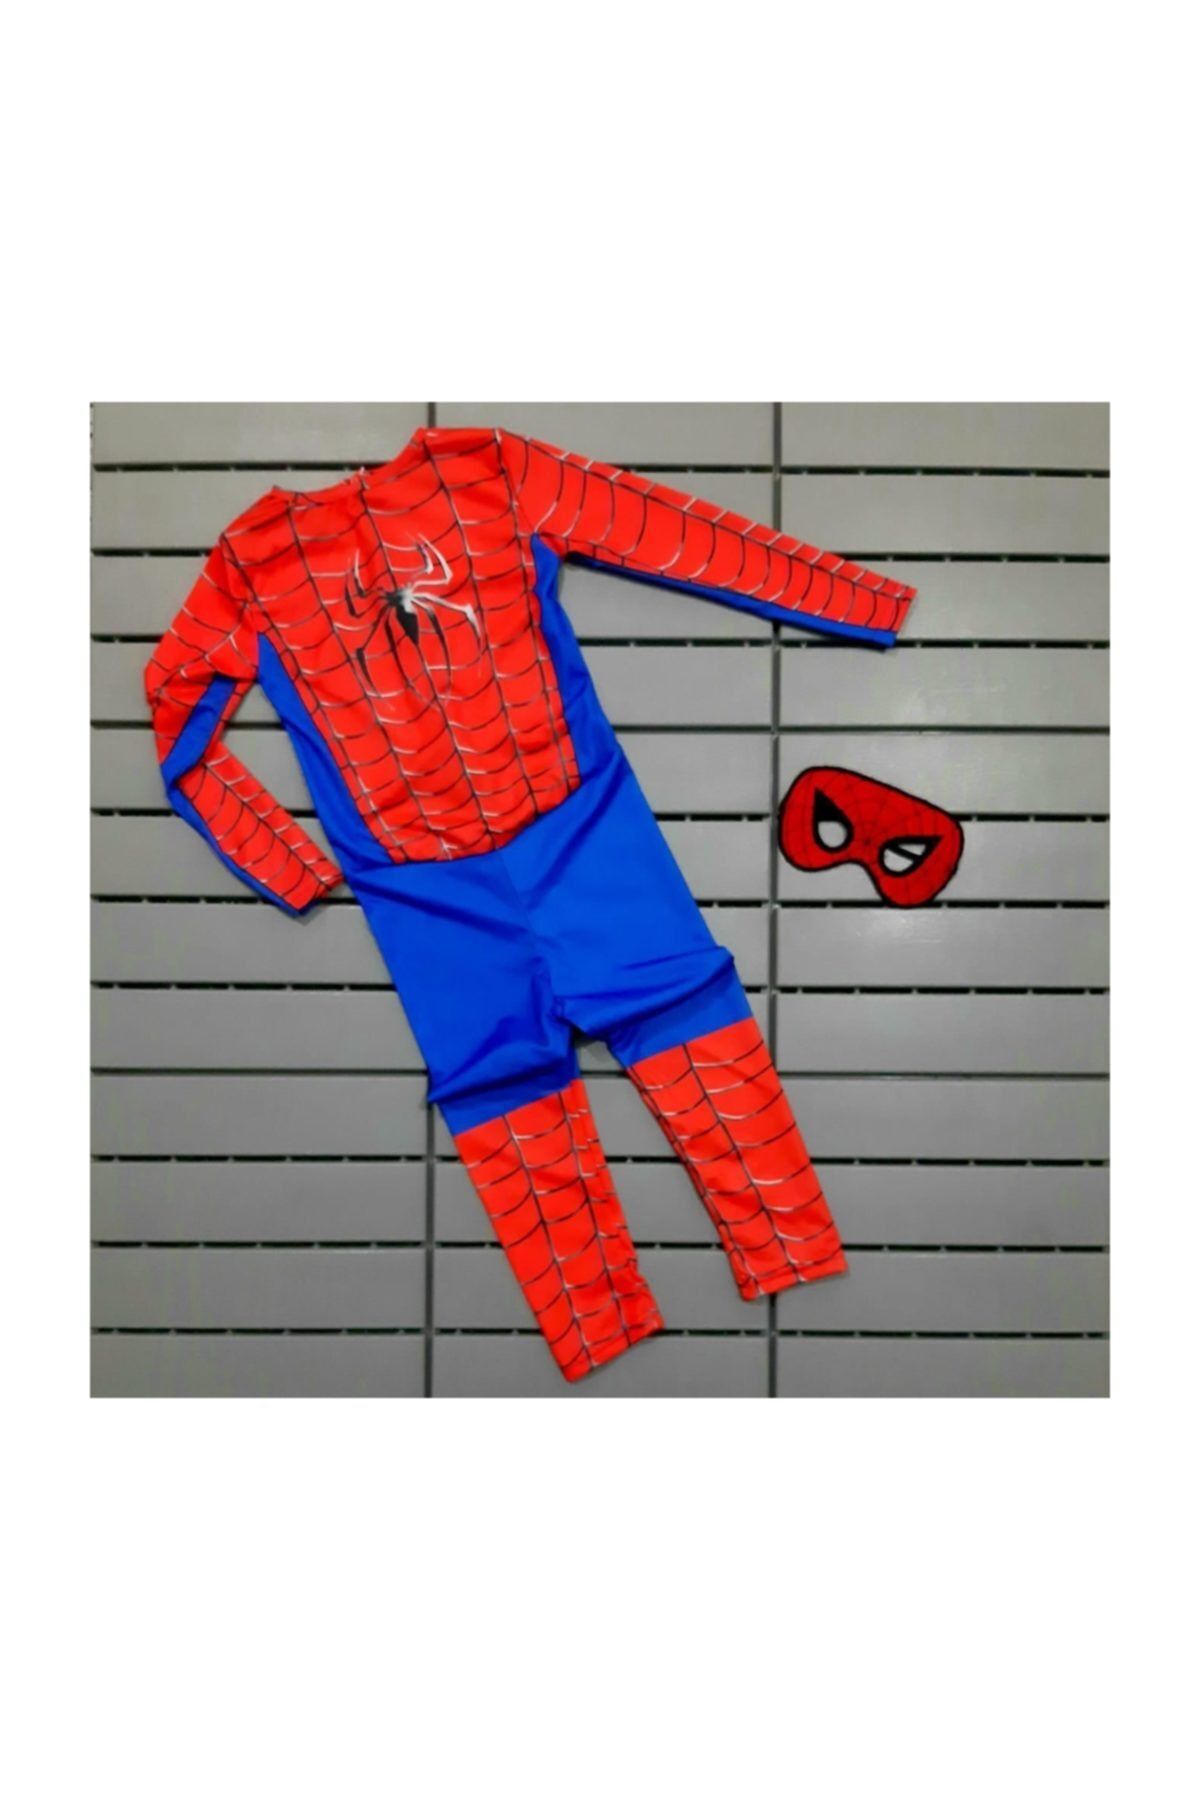 Tpm Spiderman Çocuk Kostümü - Kırmızı , Mavi Örümcek Adam Çocuk Kostümü